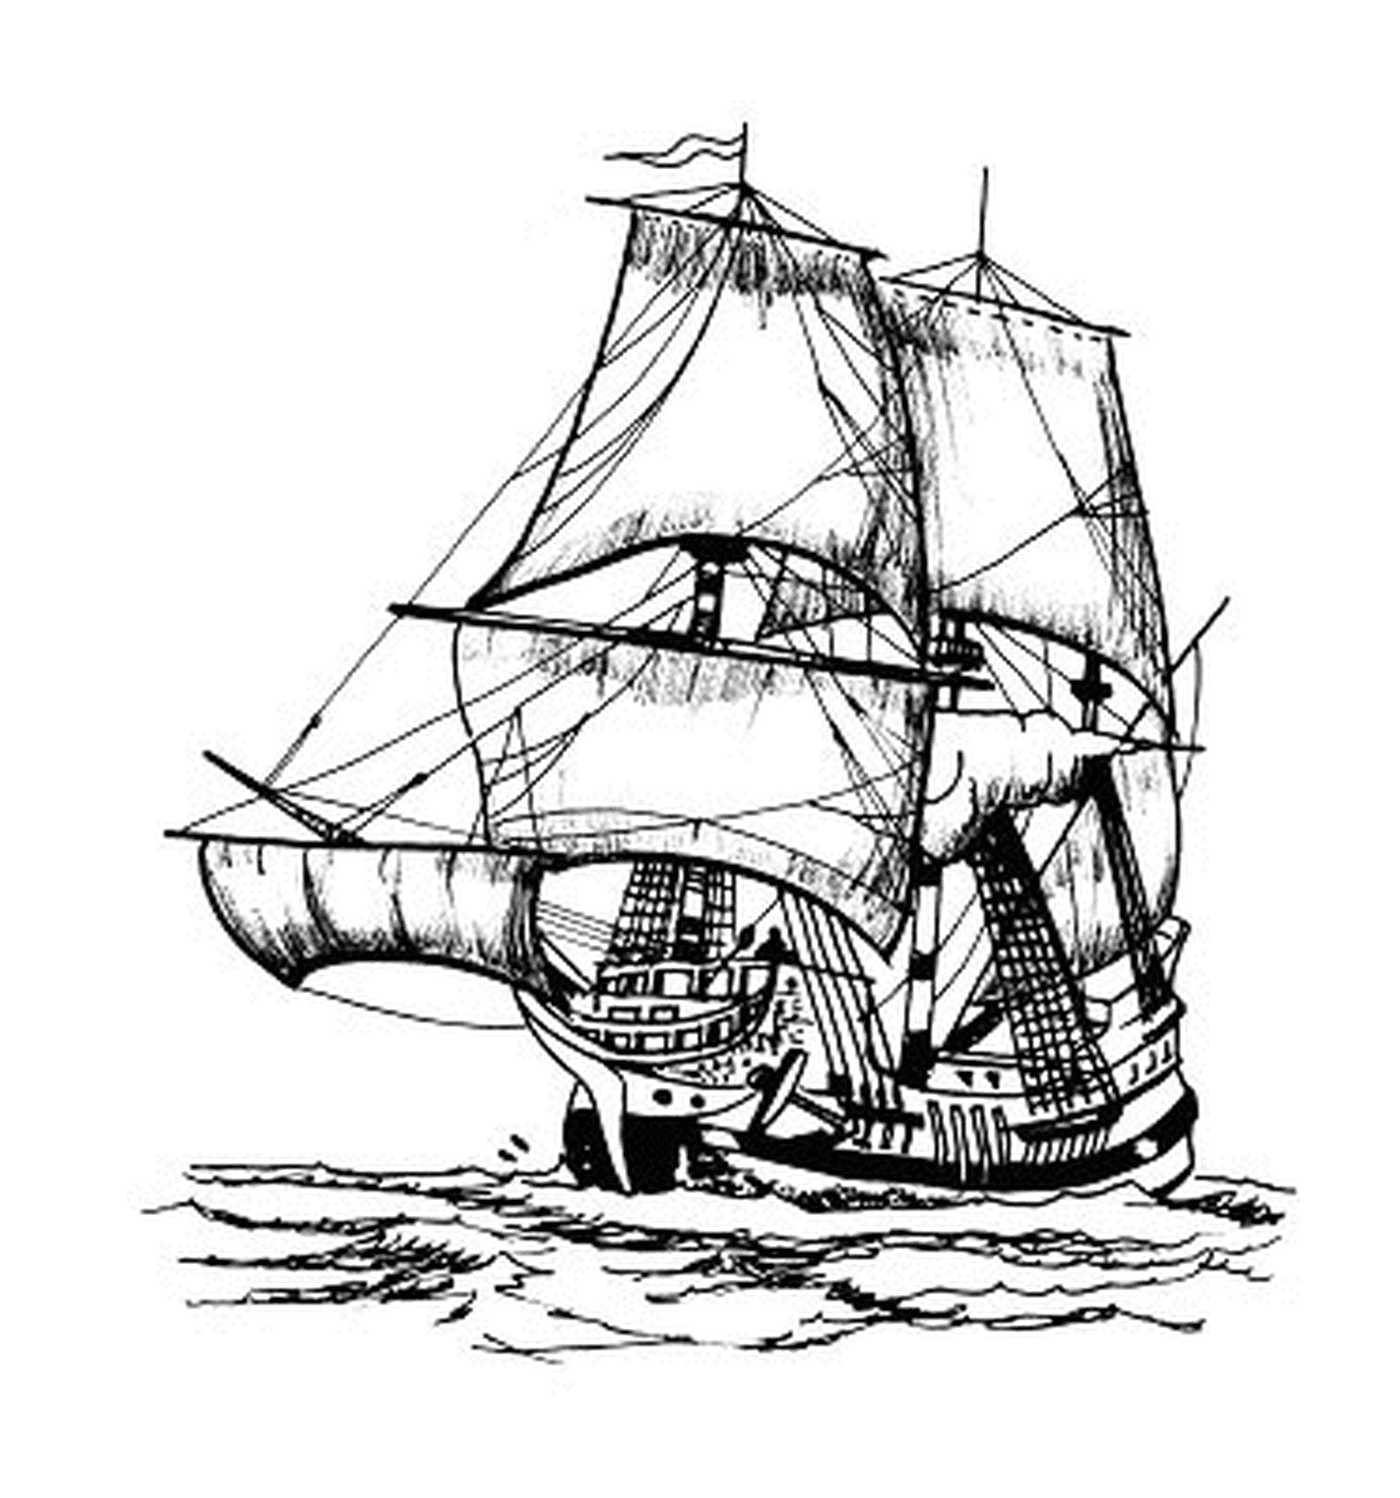  一艘在海上航行的海盗船 